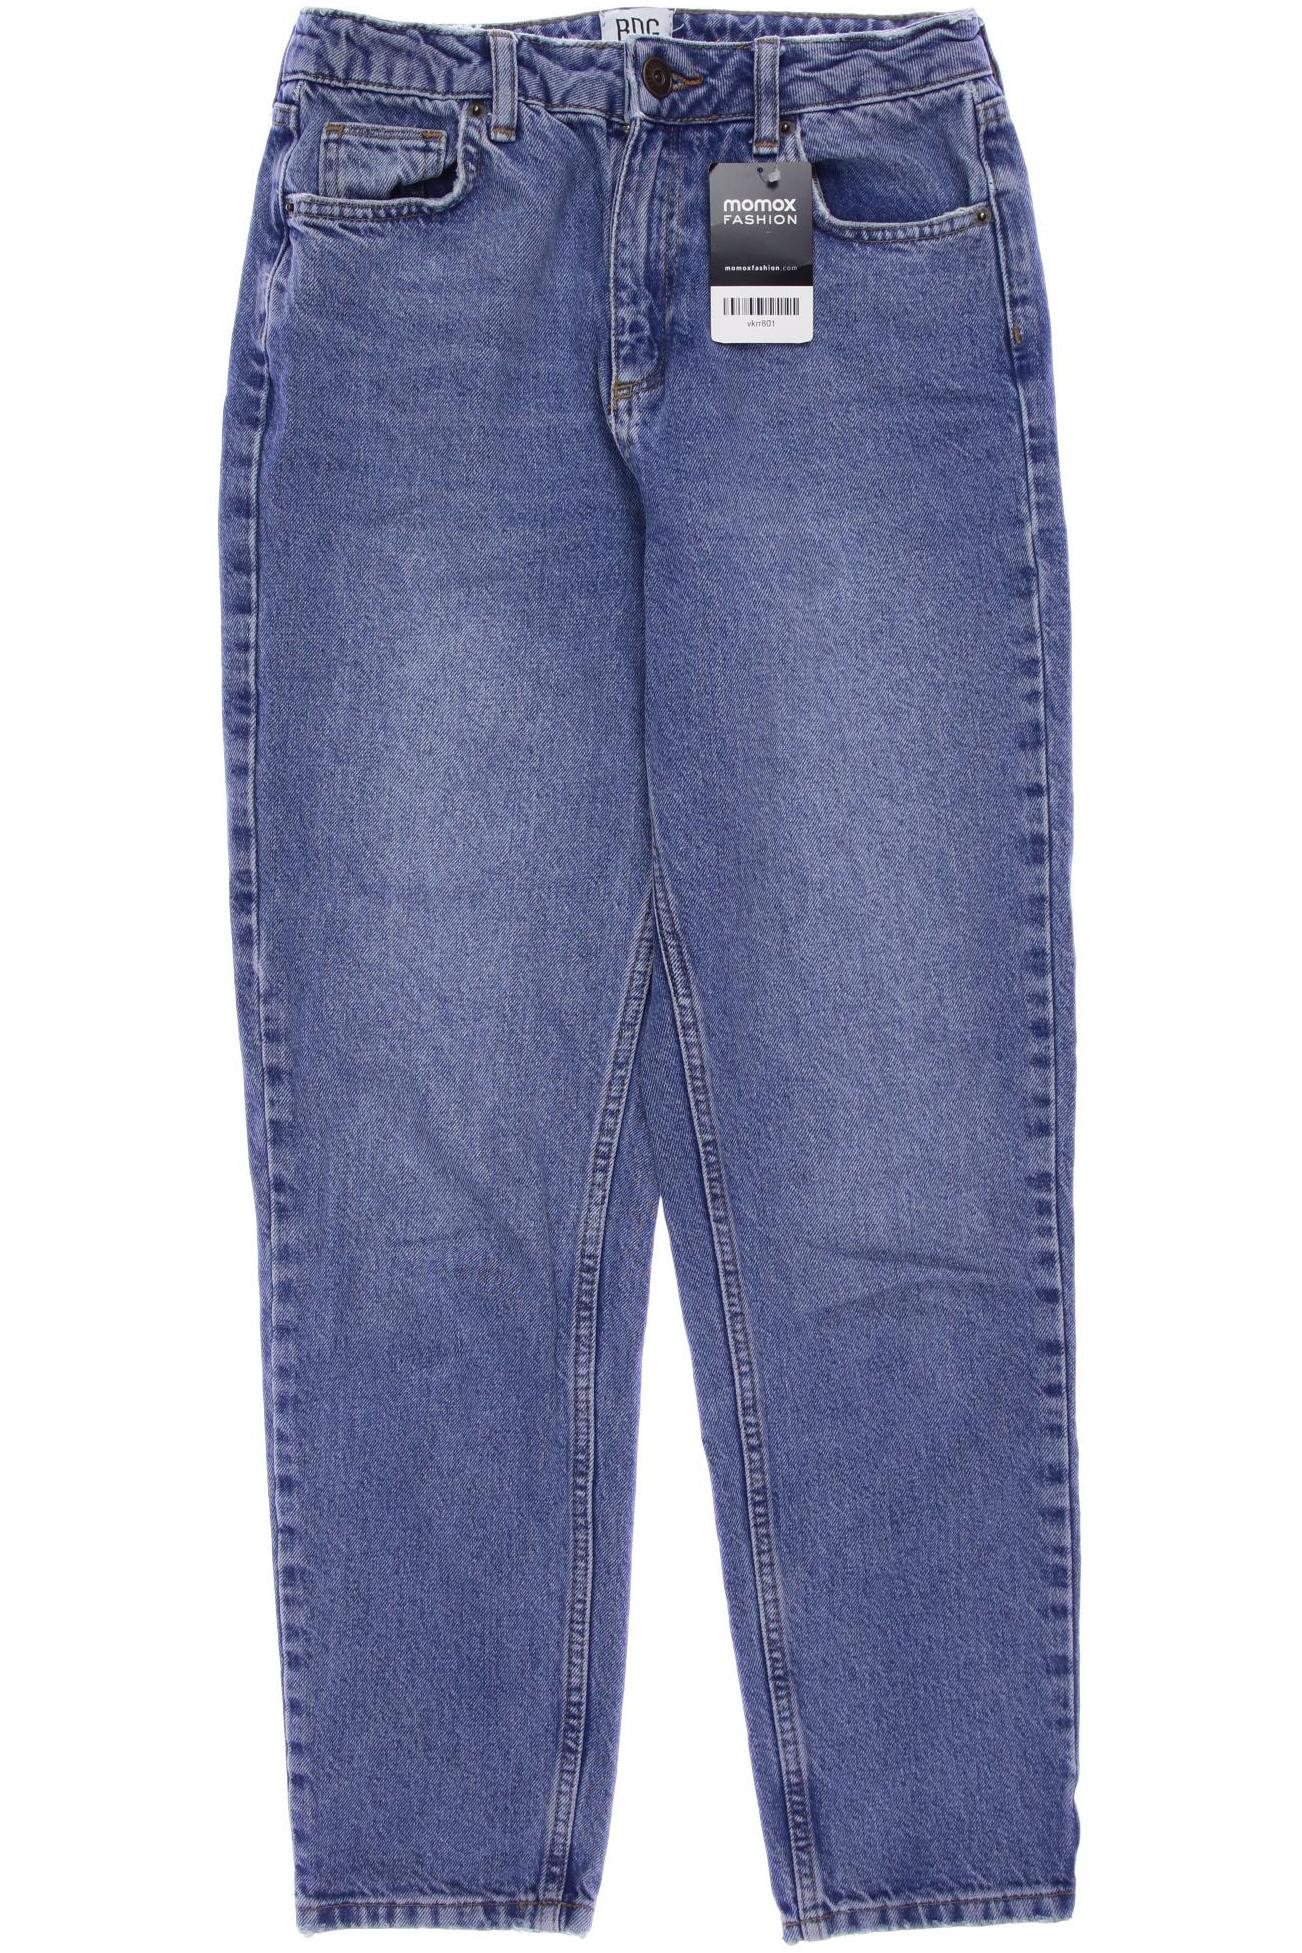 BDG Urban Outfitters Damen Jeans, blau, Gr. 38 von BDG Urban Outfitters